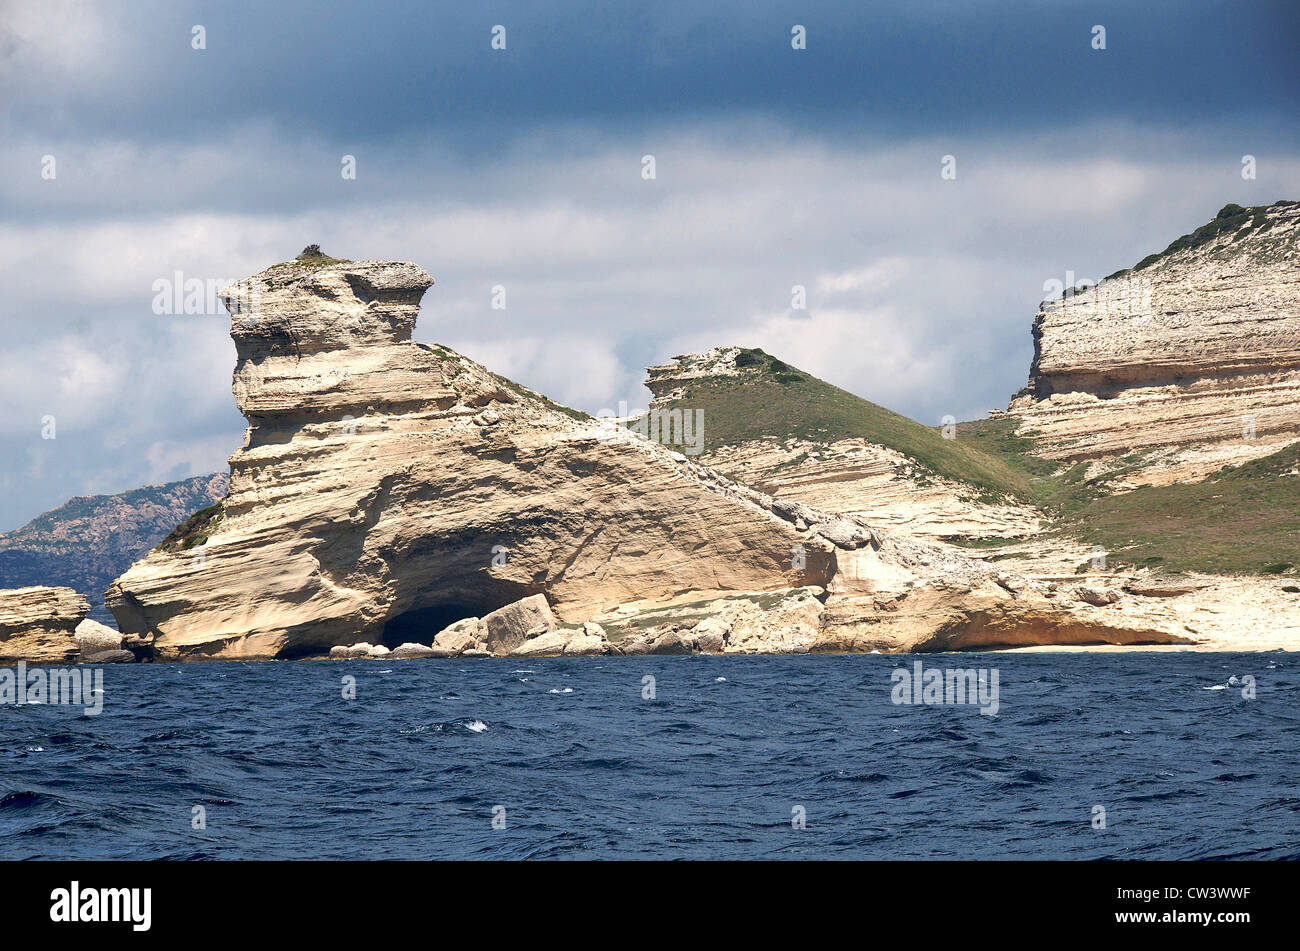 shoreline near Bonifacio South Corsica France Stock Photo